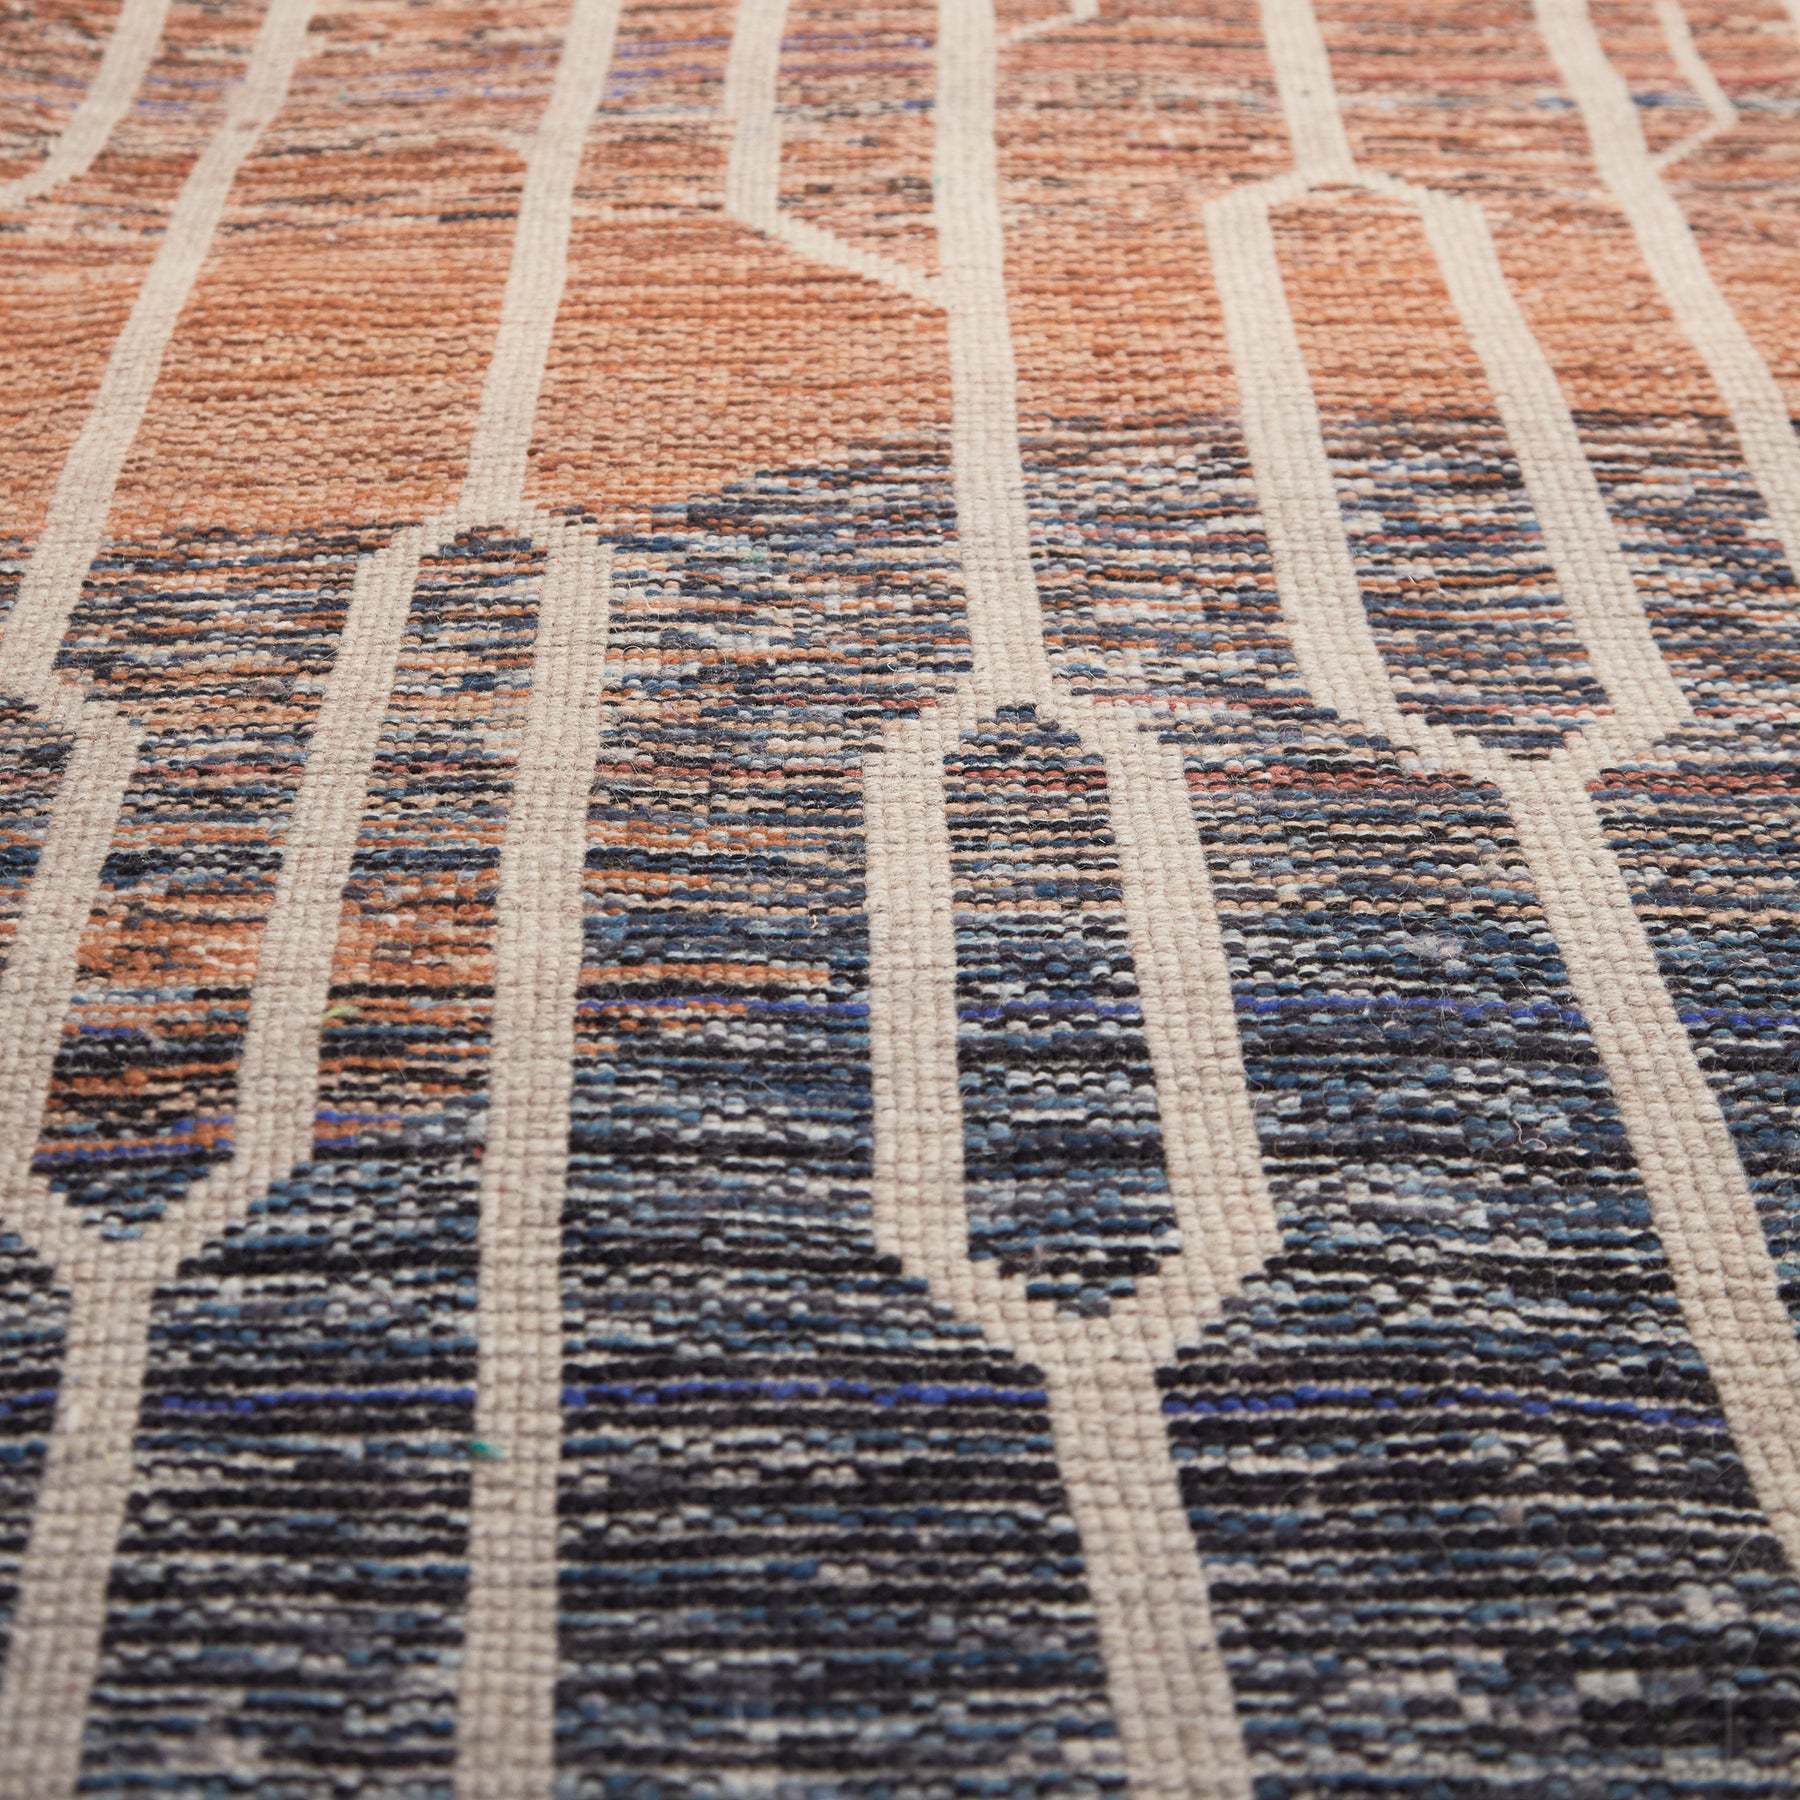 dettaglio della lavorazione precisa di un tappeto beni mrirt molto grande con sfumature blu rosse arancioni e linee bianche